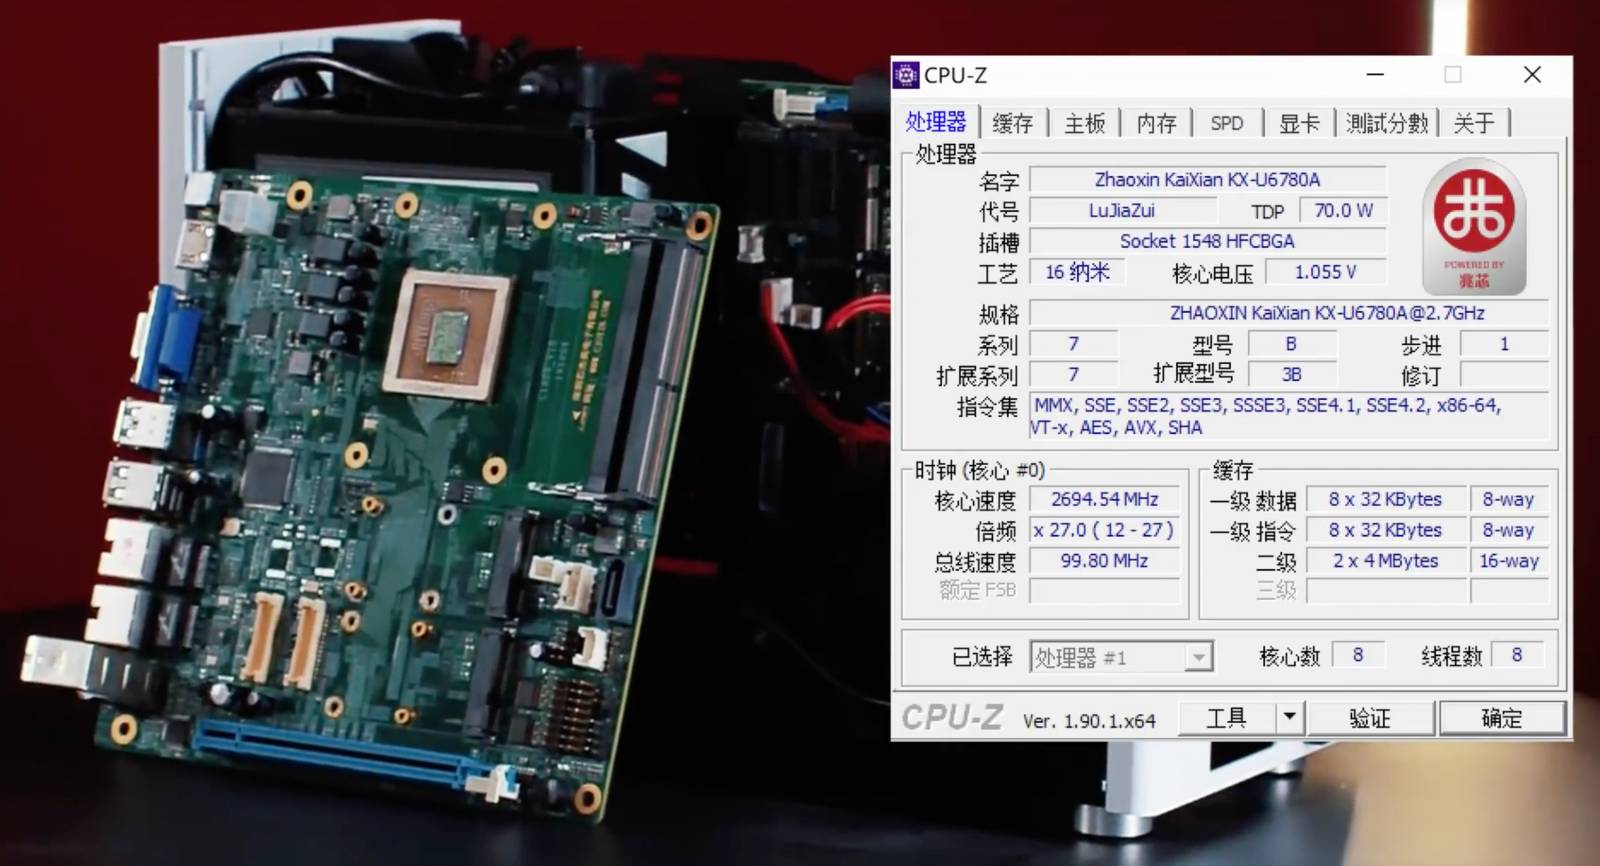 Le kx-u6780a vu par CPU-Z